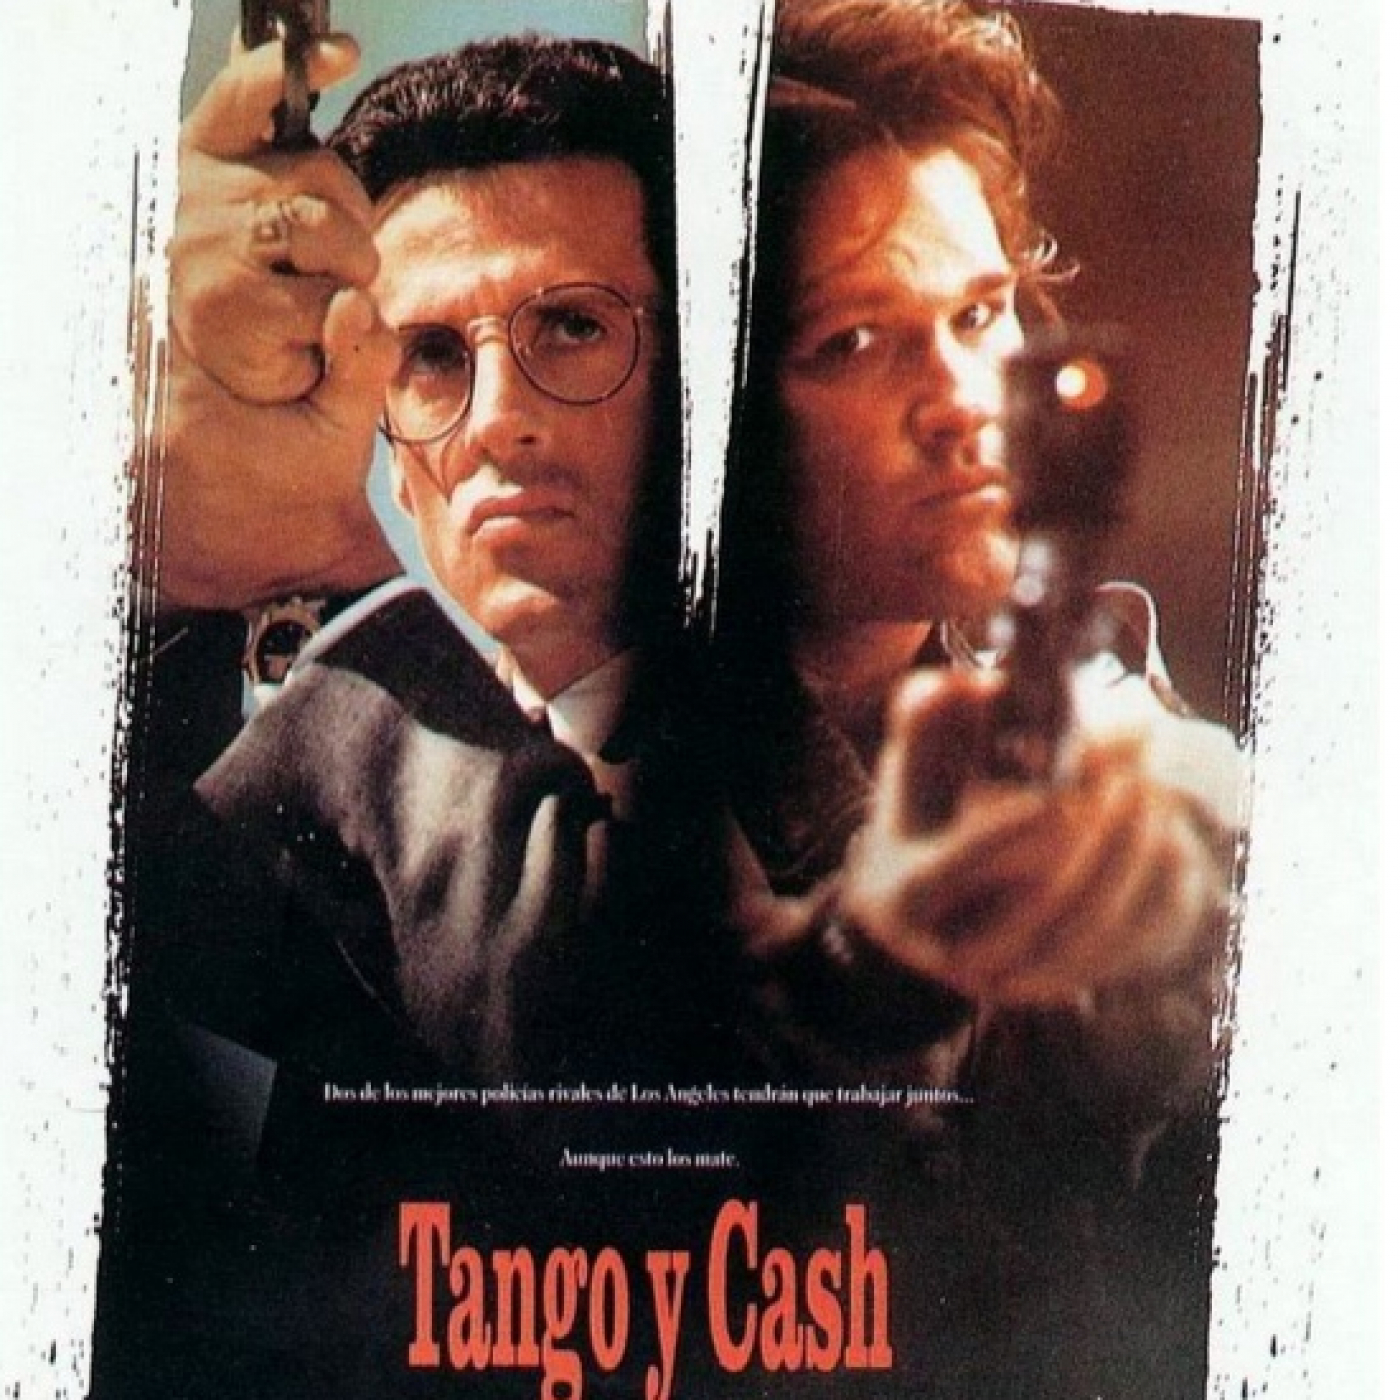 1x11.--Tango y Cash - 1989